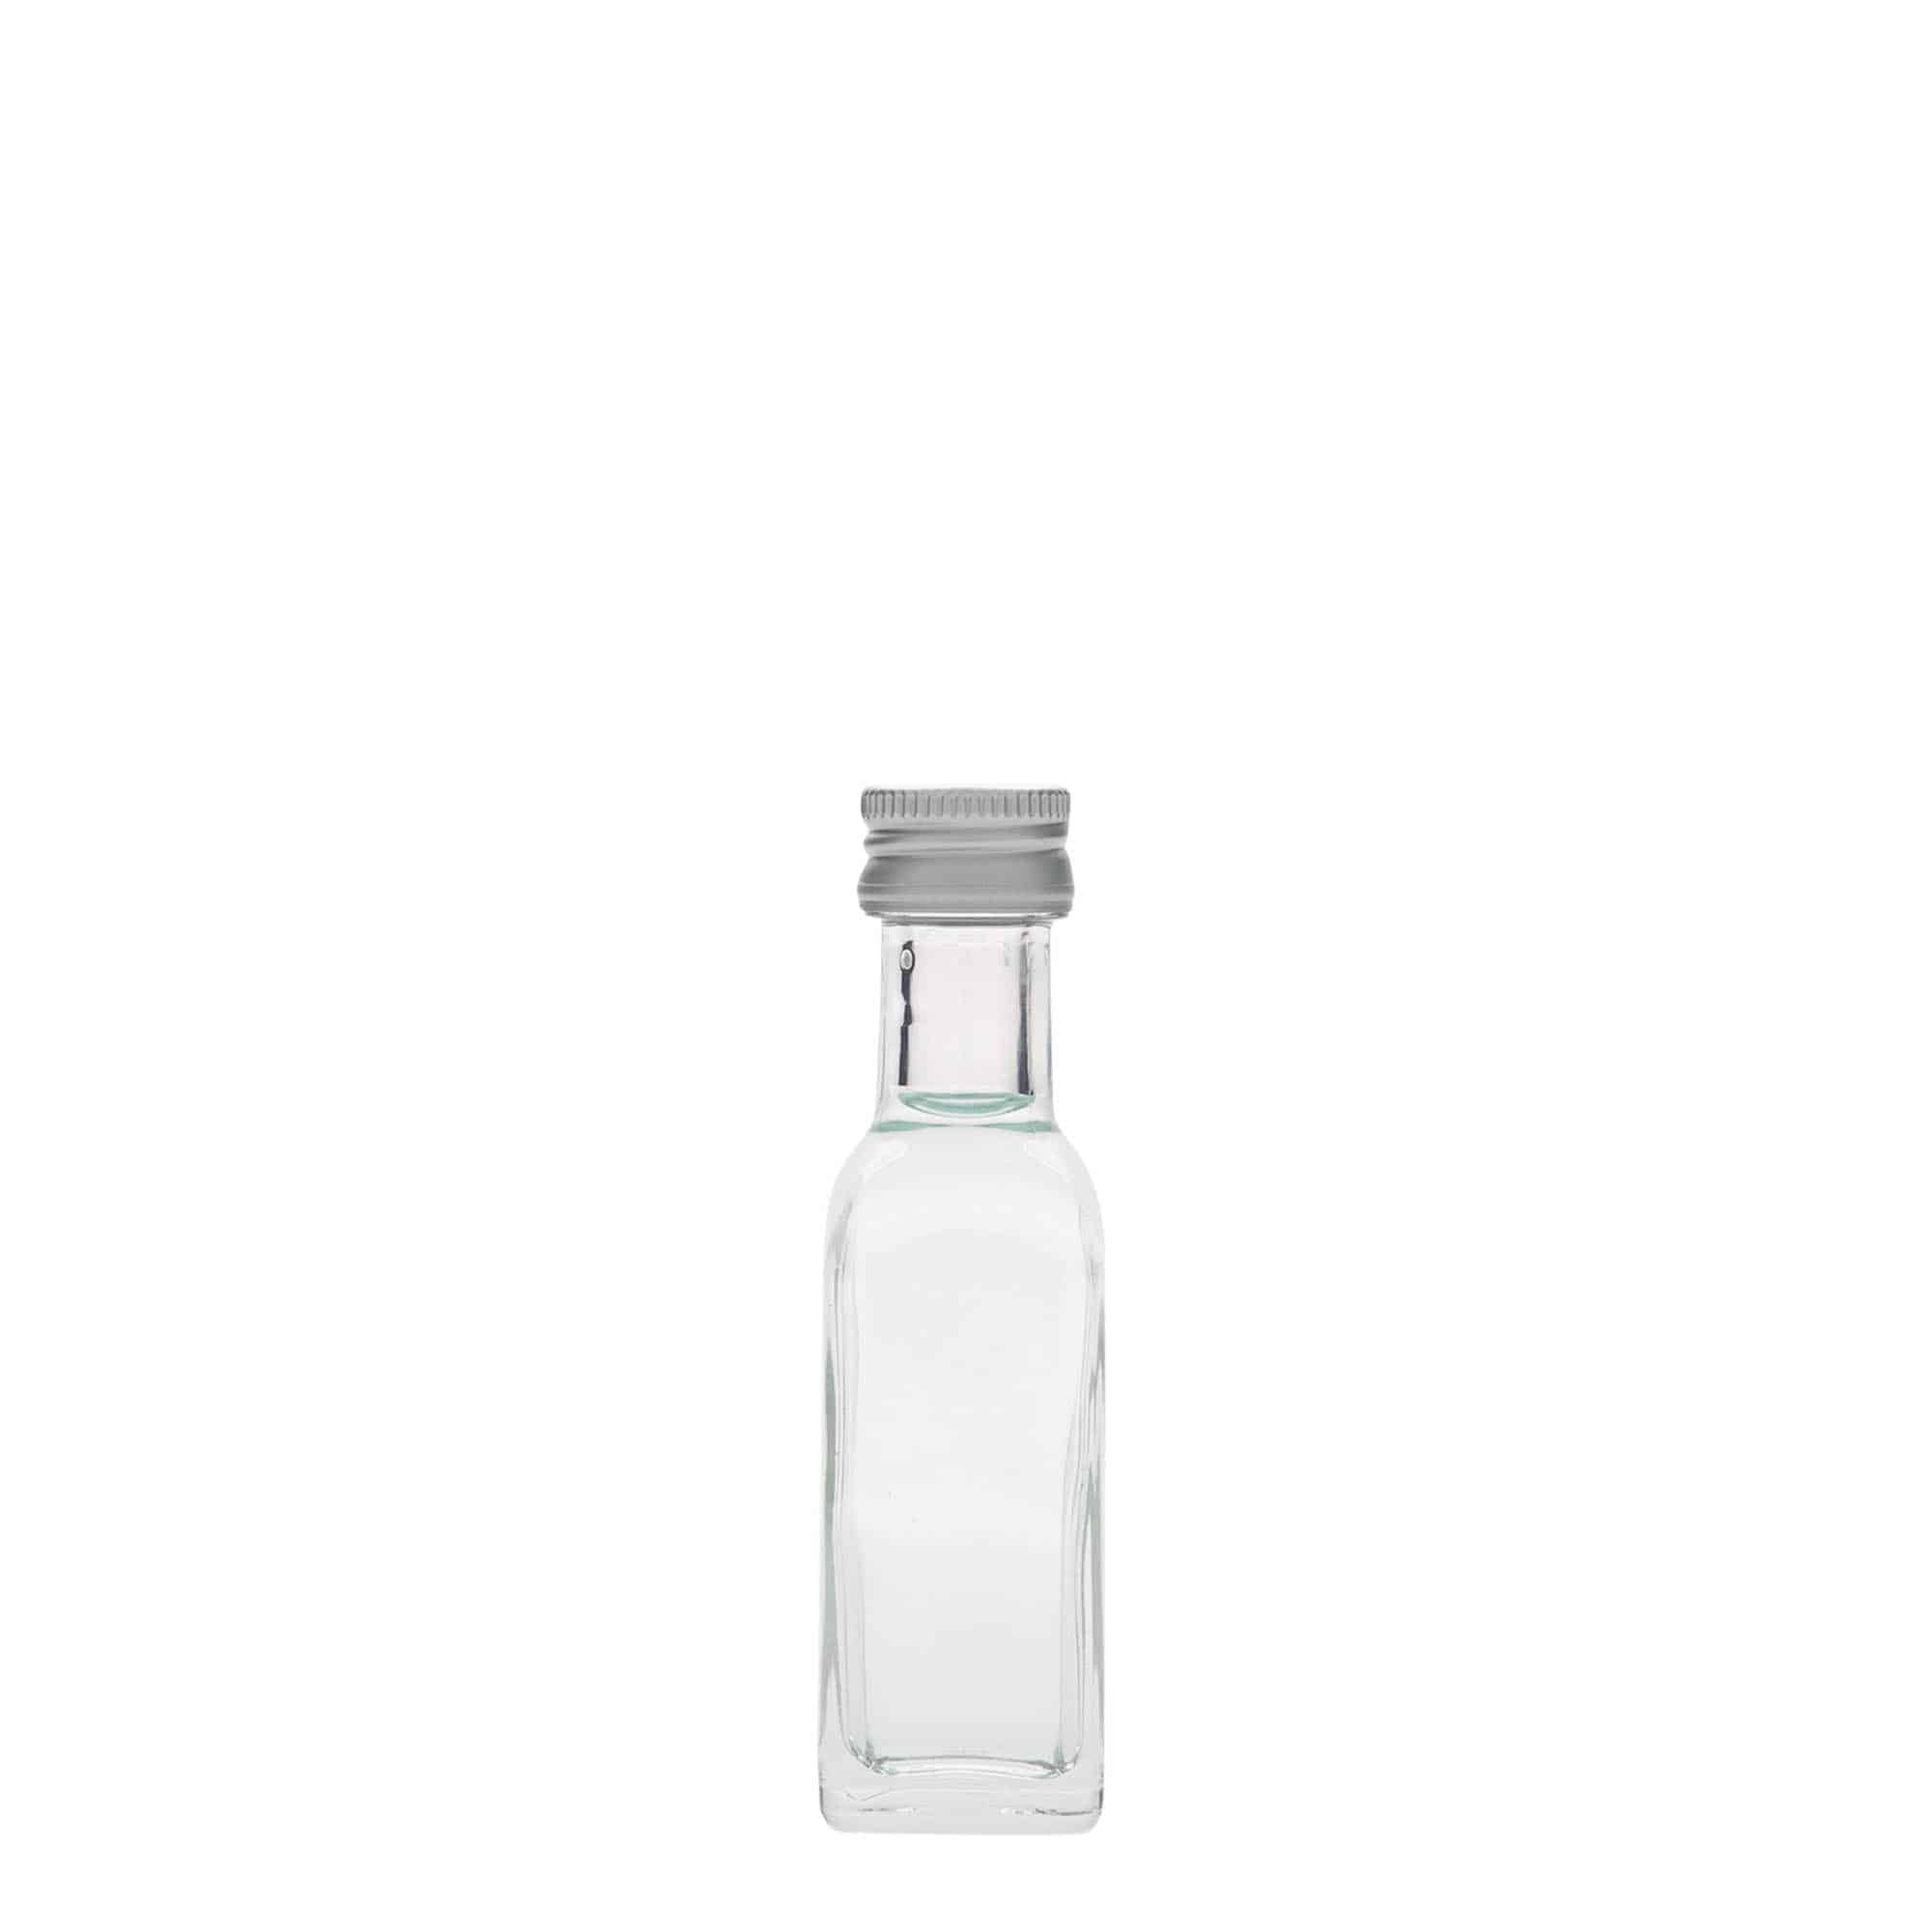 Skleněná lahev 20 ml 'Marasca', čtvercová, uzávěr: PP 18